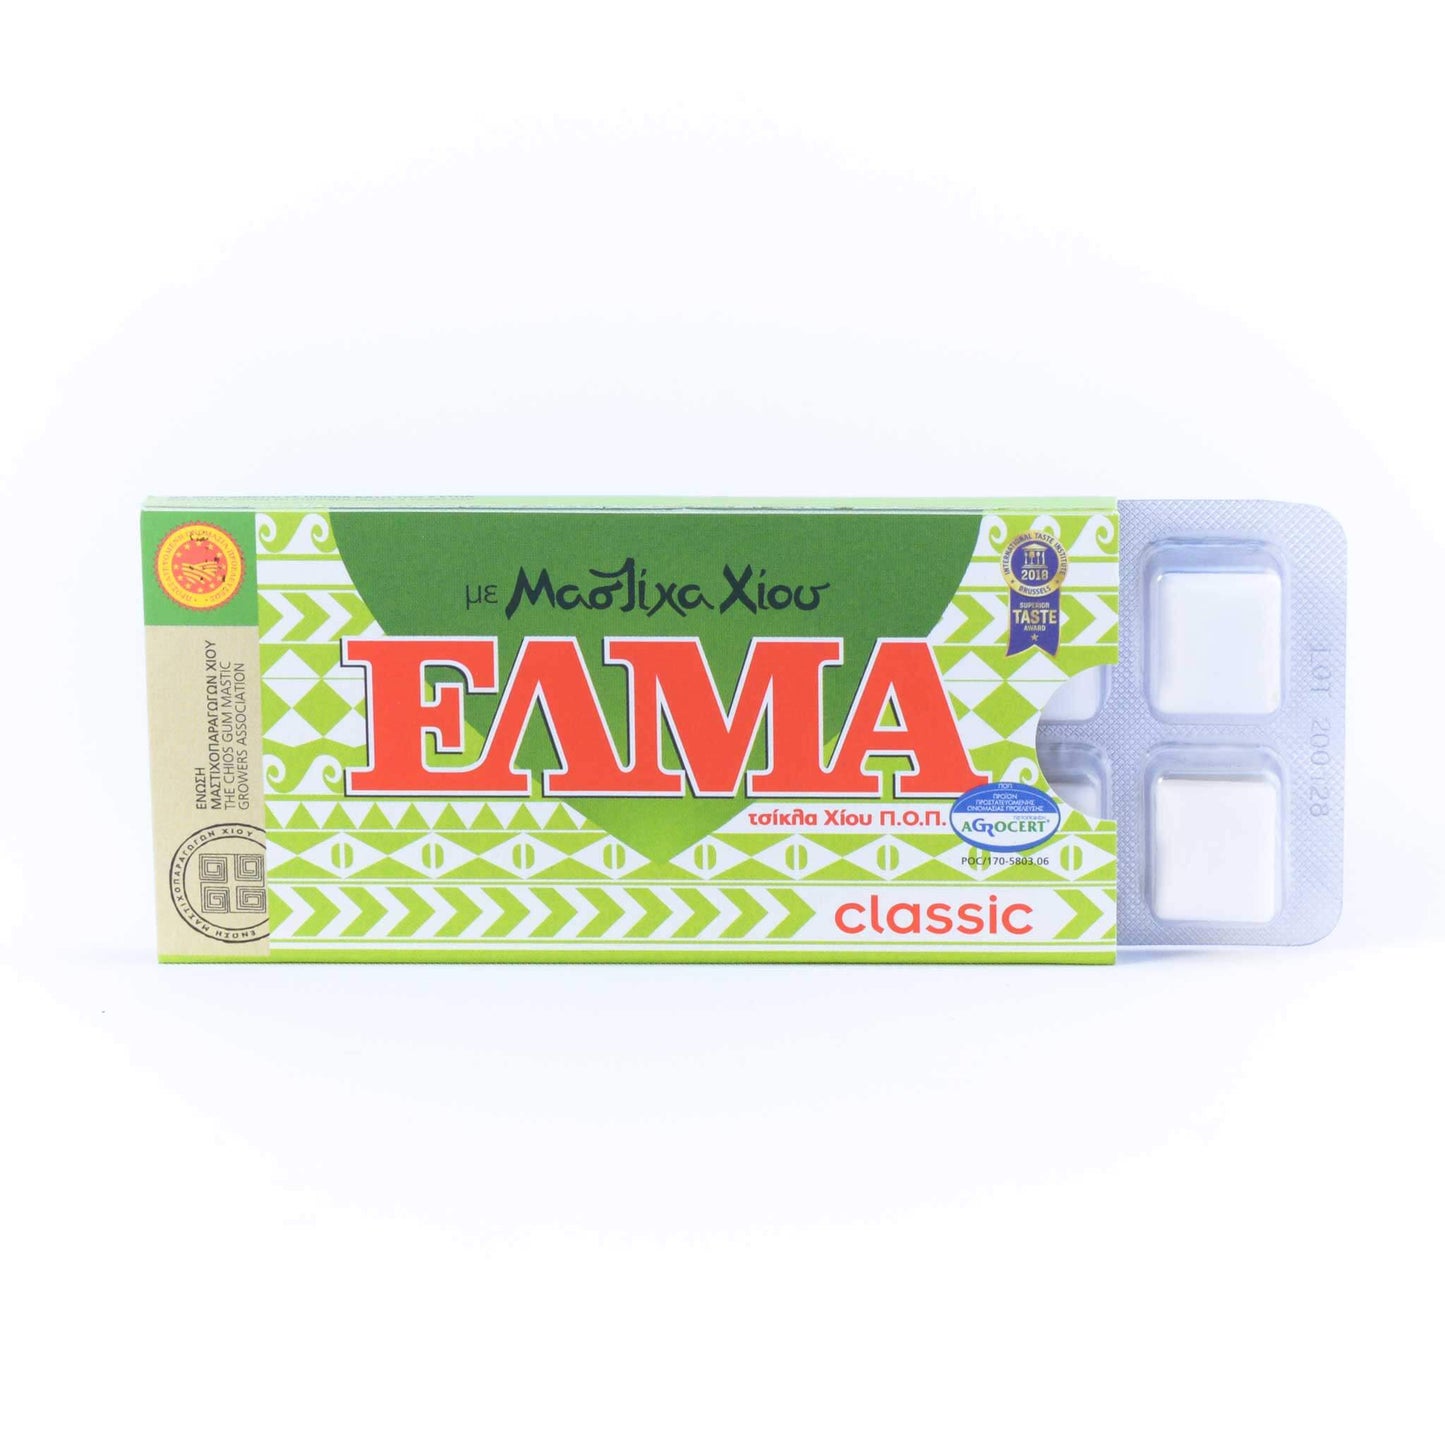 ELMA Classic with mastic gum